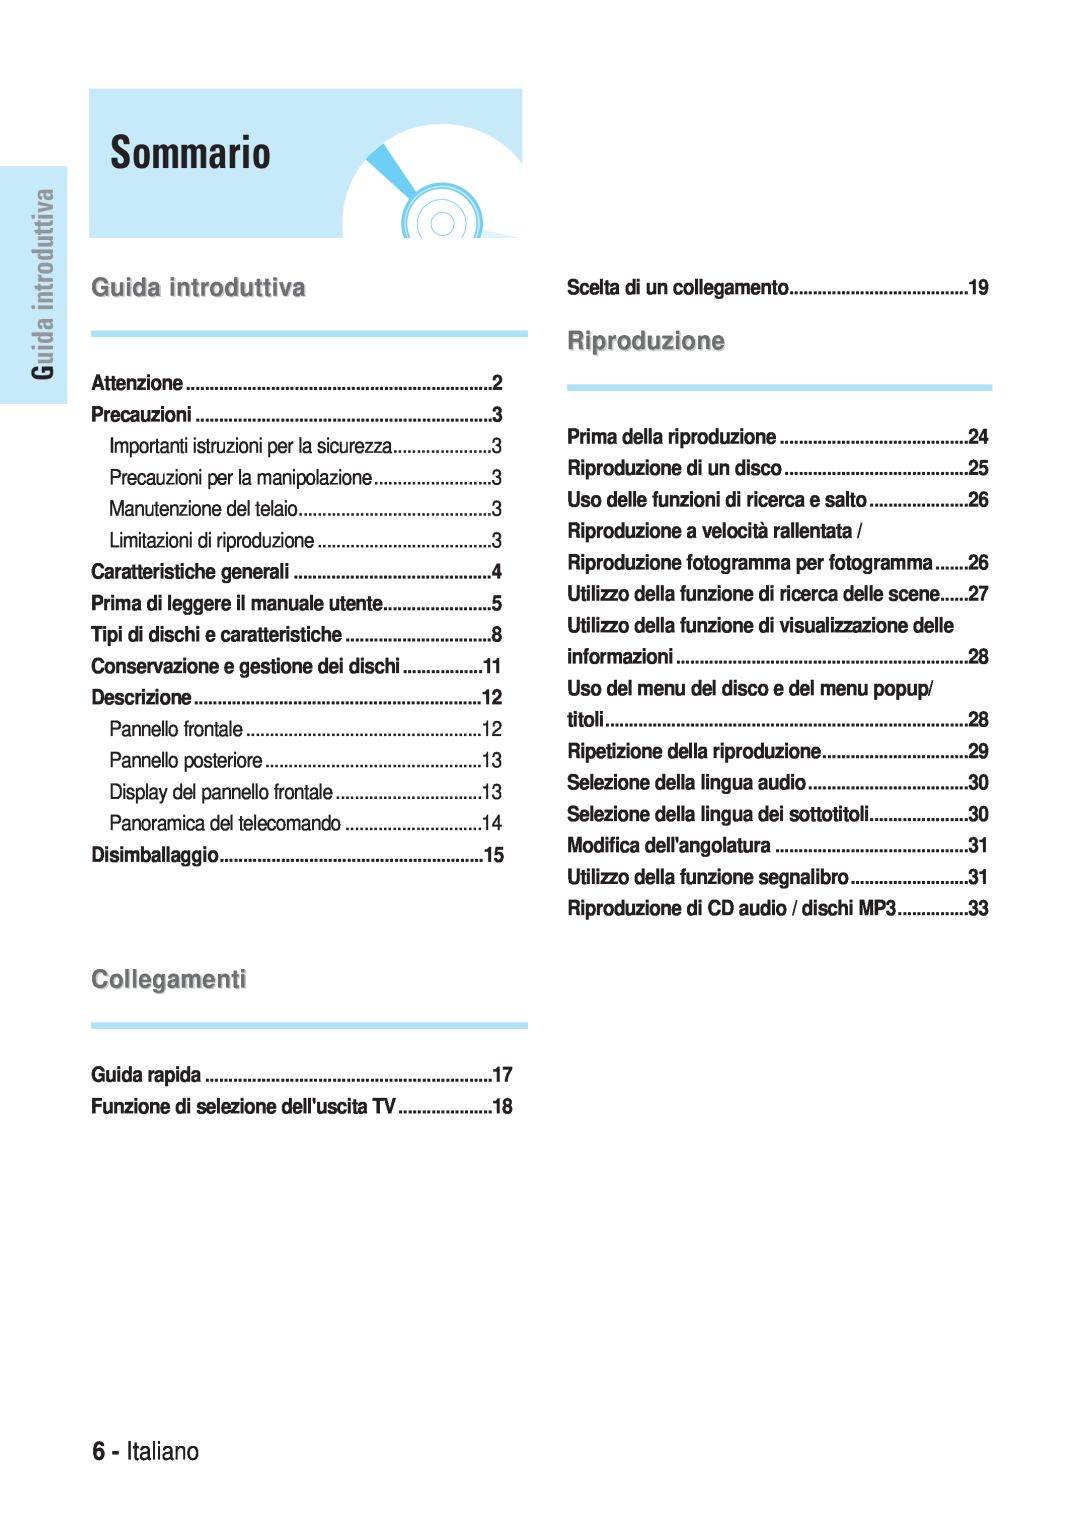 Samsung BD-P1000/XEL manual Sommario, Guida introduttiva, Collegamenti, Italiano, Riproduzione di un disco, titoli 